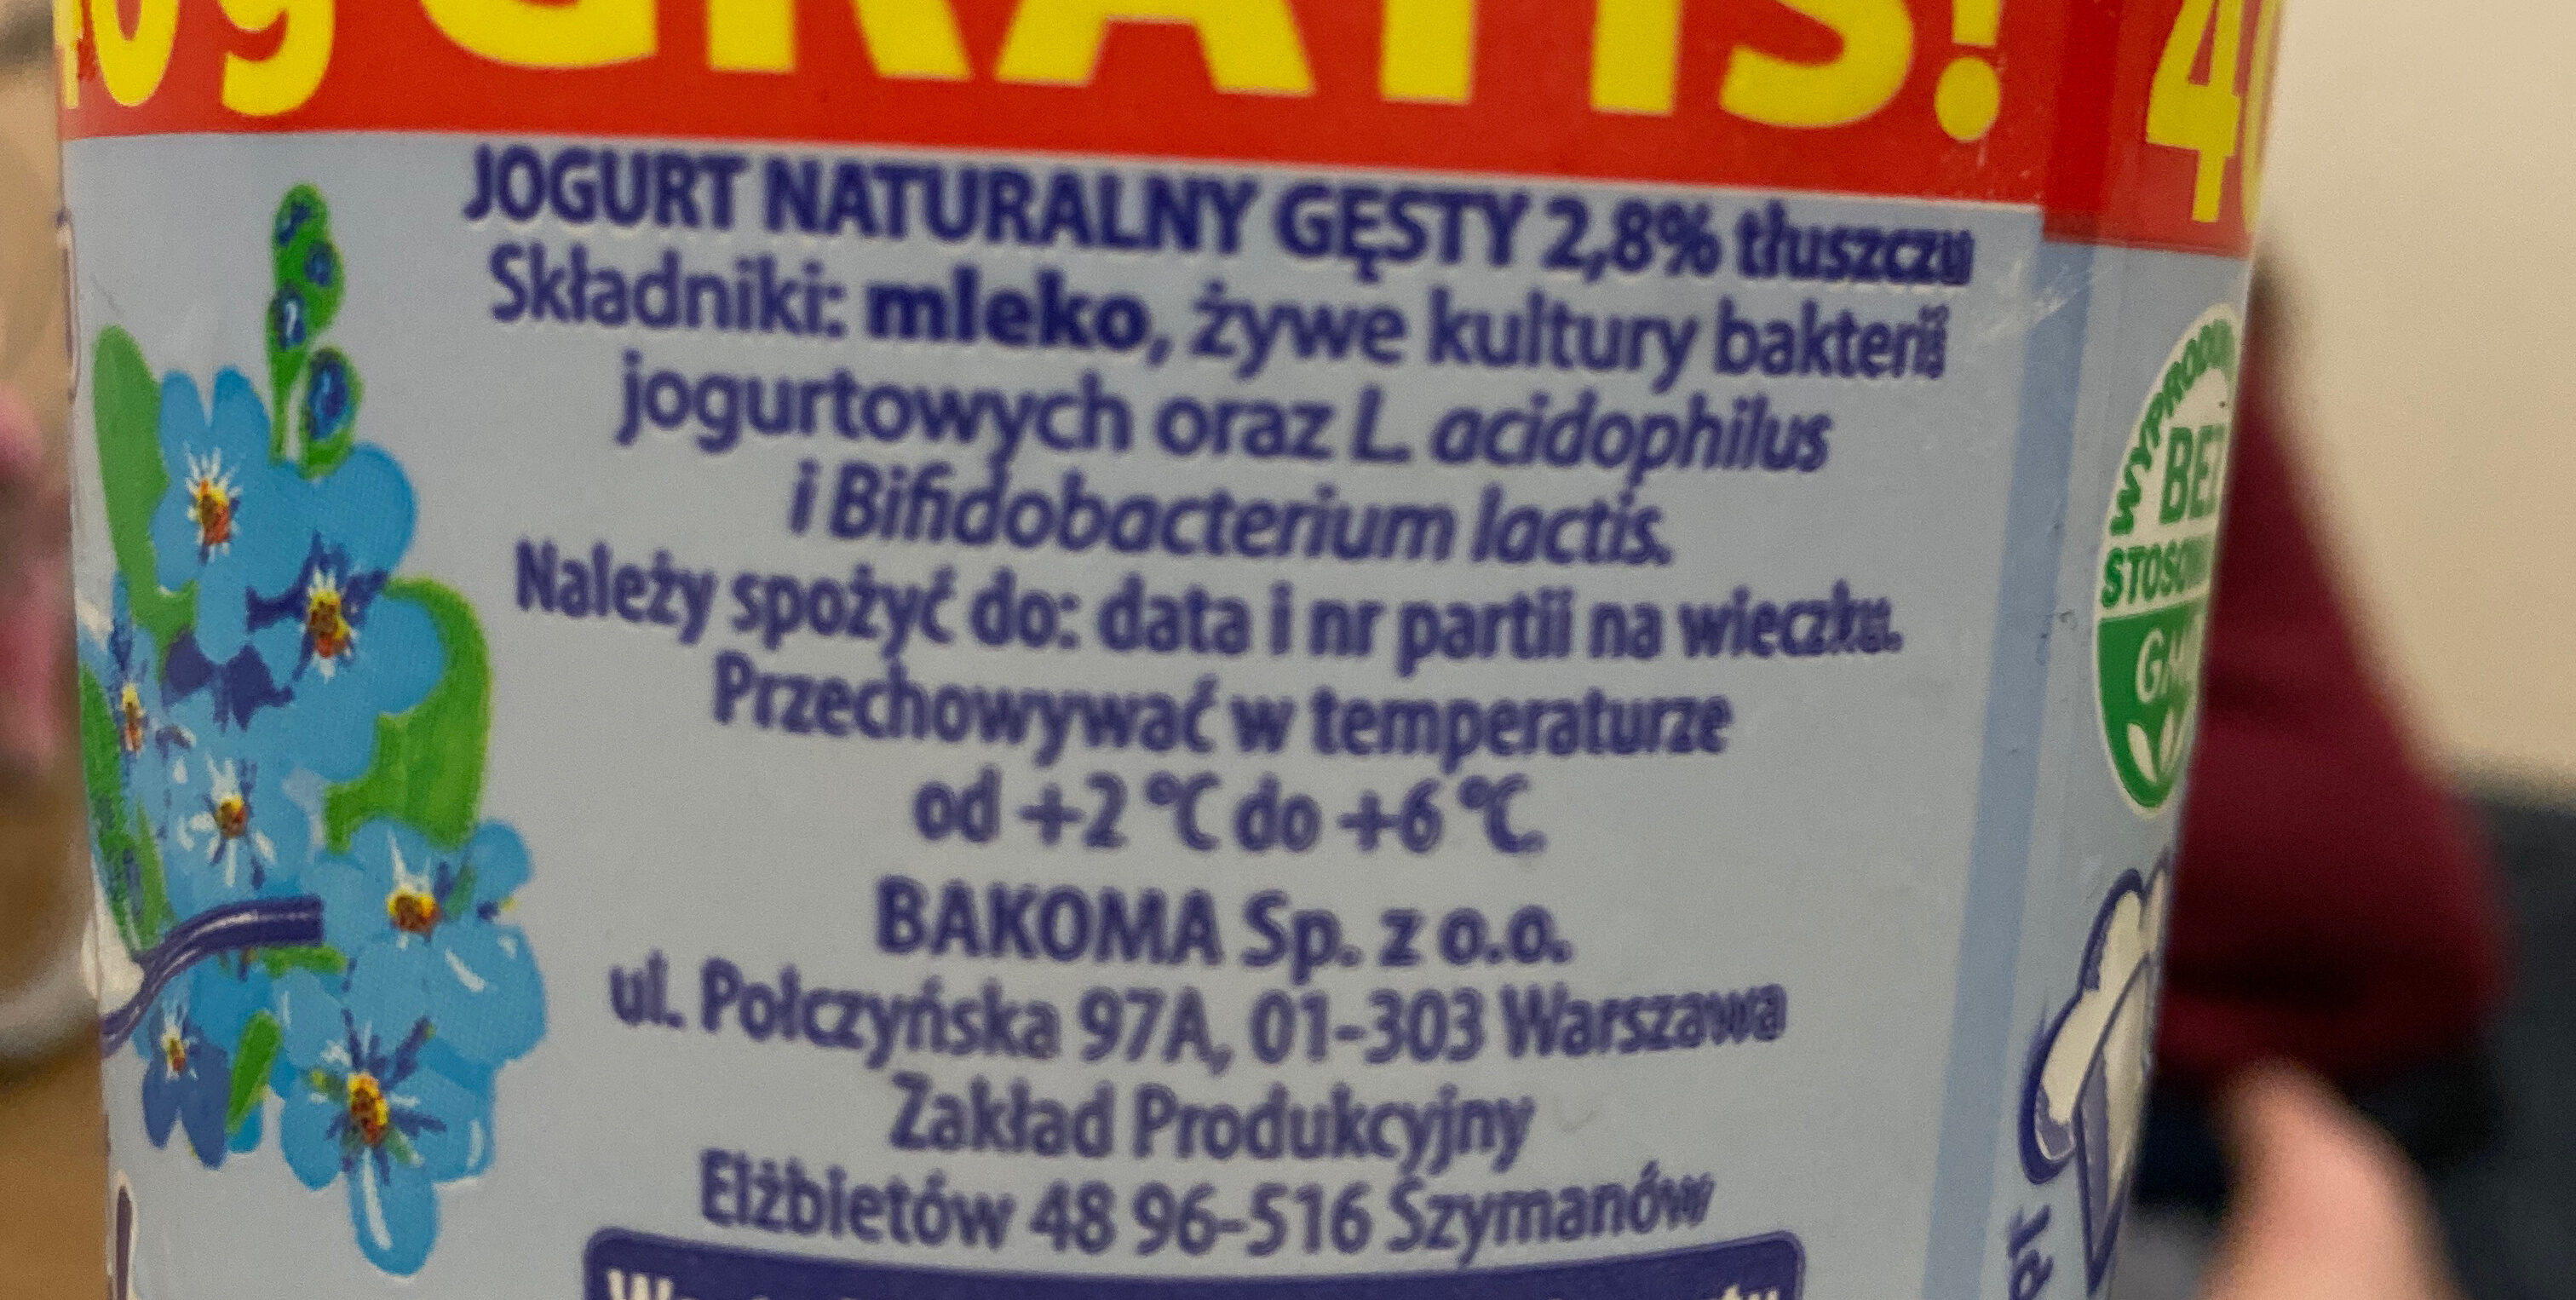 Bakona Jogurt Naturalny Gęsty - Ingredients